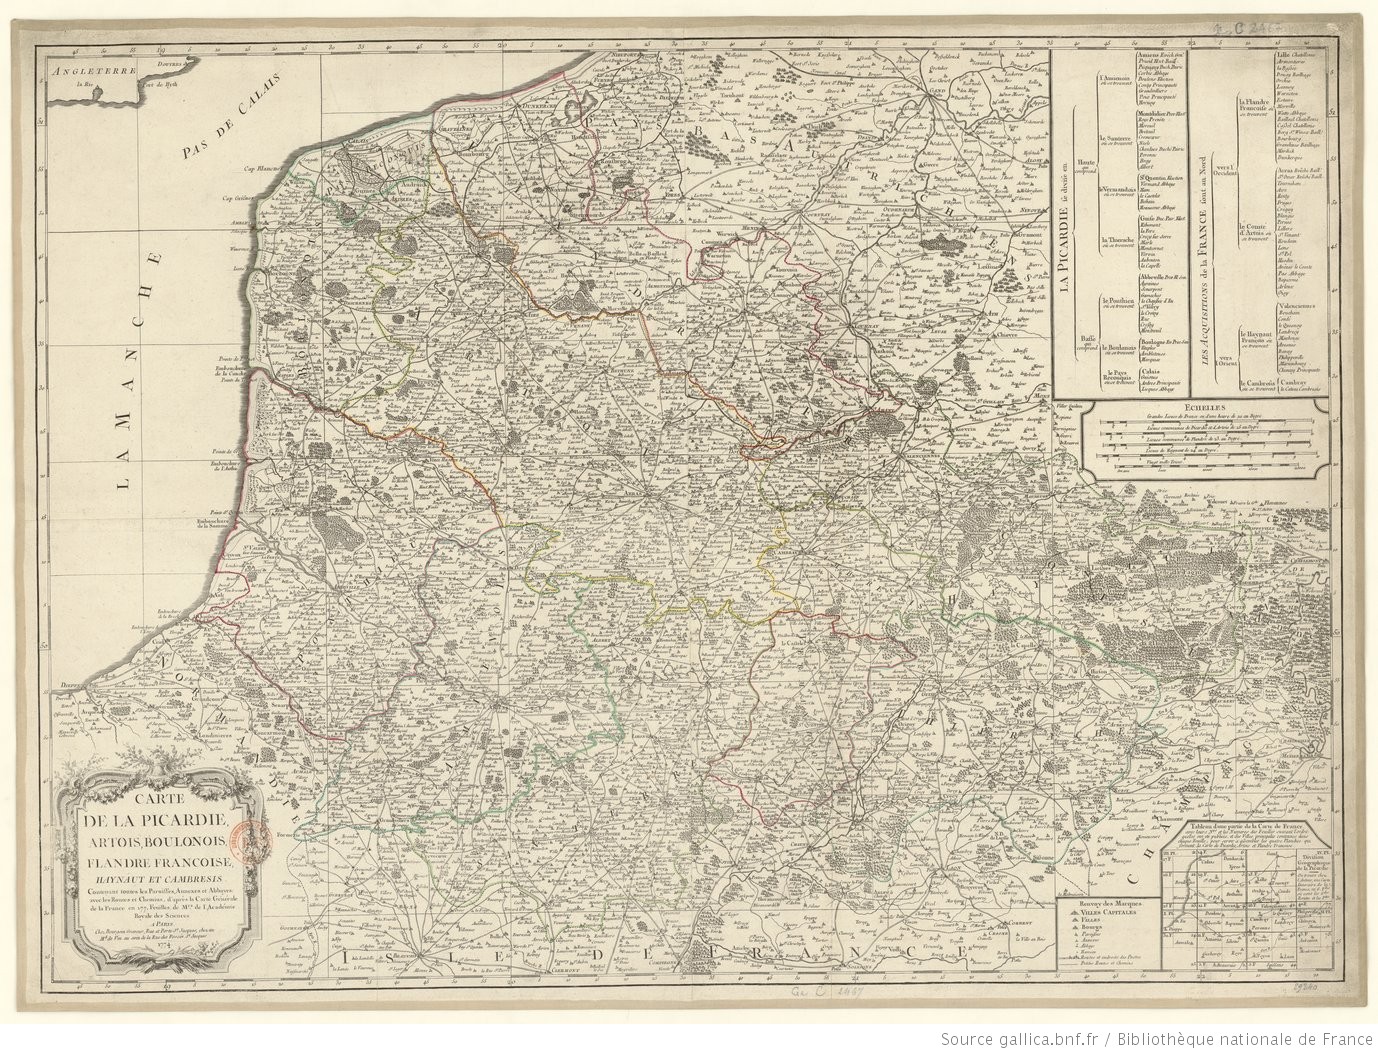 Carte de Flandre, Artois, Picardie, Hainaut, Cambresis au XVIIIe siècle